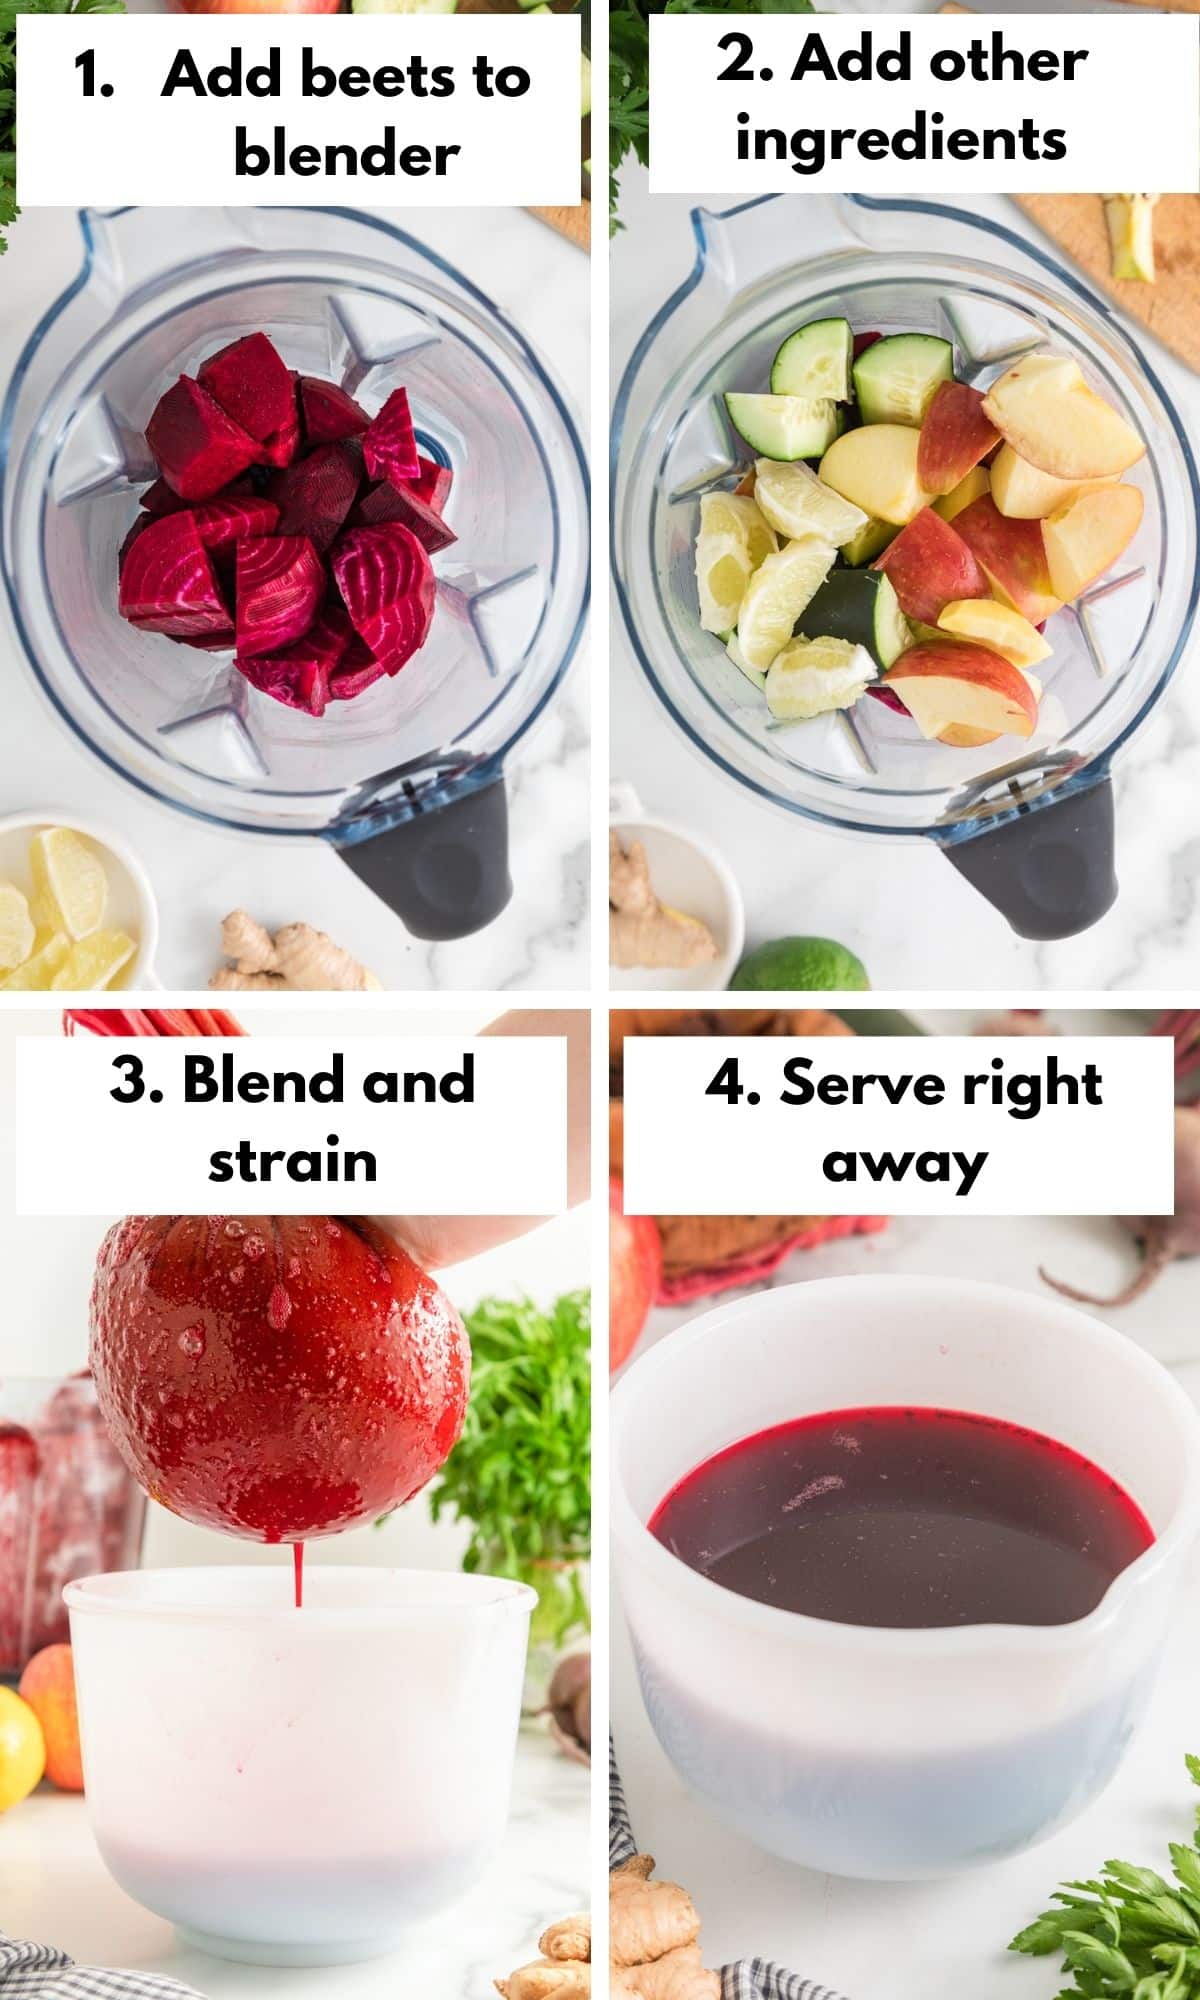 Heart Beet Juice Recipe, Apple Juicer, Beet Juice Recipes, Fruit Juice